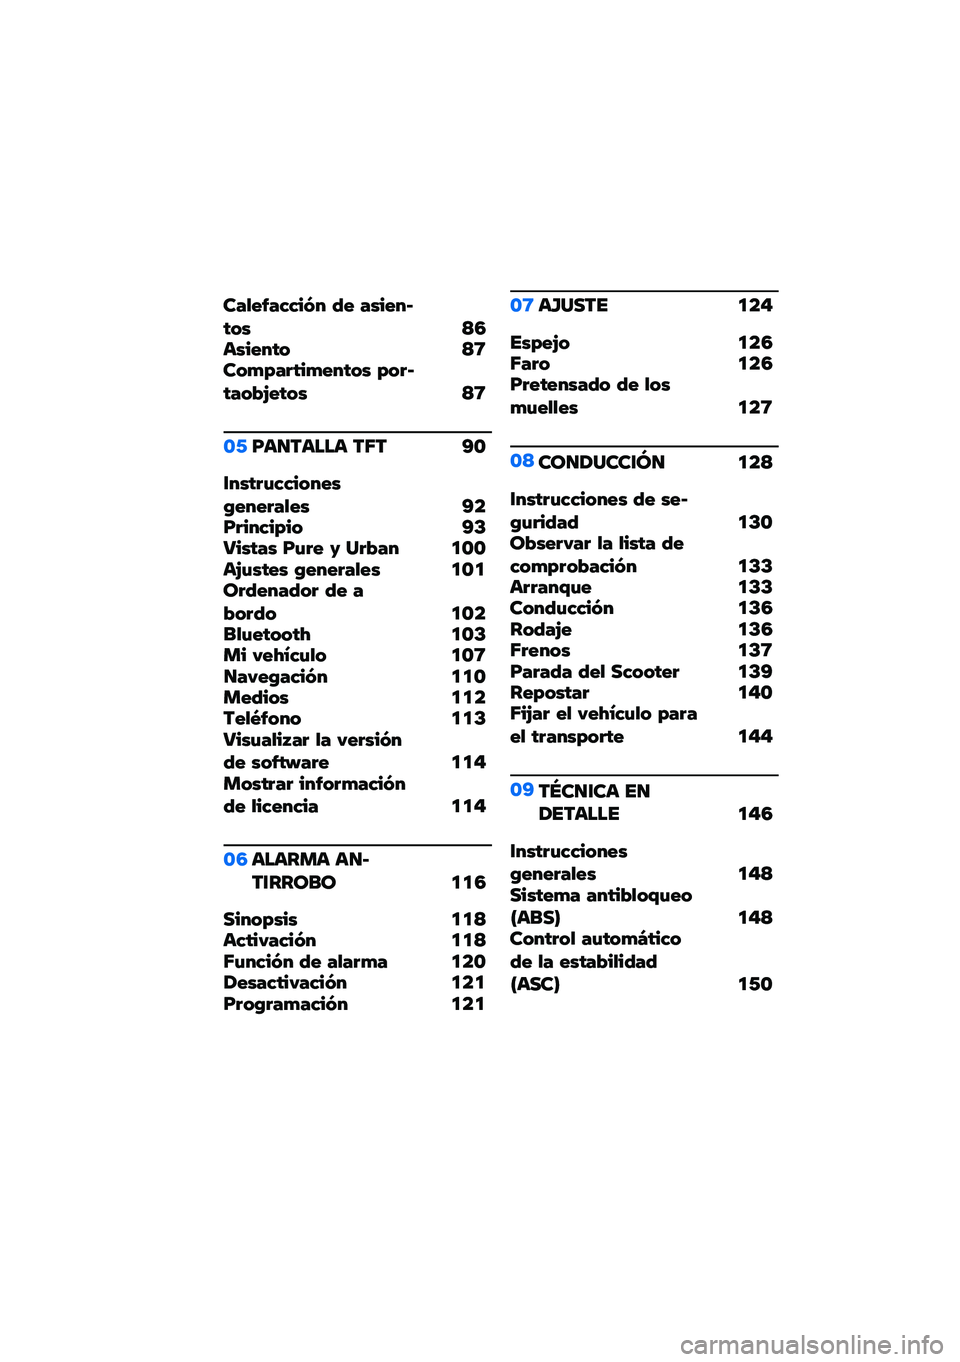 BMW MOTORRAD C 400 GT 2021  Manual de instrucciones (in Spanish) ��#�+�!�6�#�1�1��7� �2�! �#���!��C�$�� �>�3����!��$� �>�8���*��#� �$��*�!��$�� ��� �C�$�#���=�!�$�� �>�8
�\b�-�F��
����� ��5� �A�\b
�\f���$� �%�1�1����!��:�!��